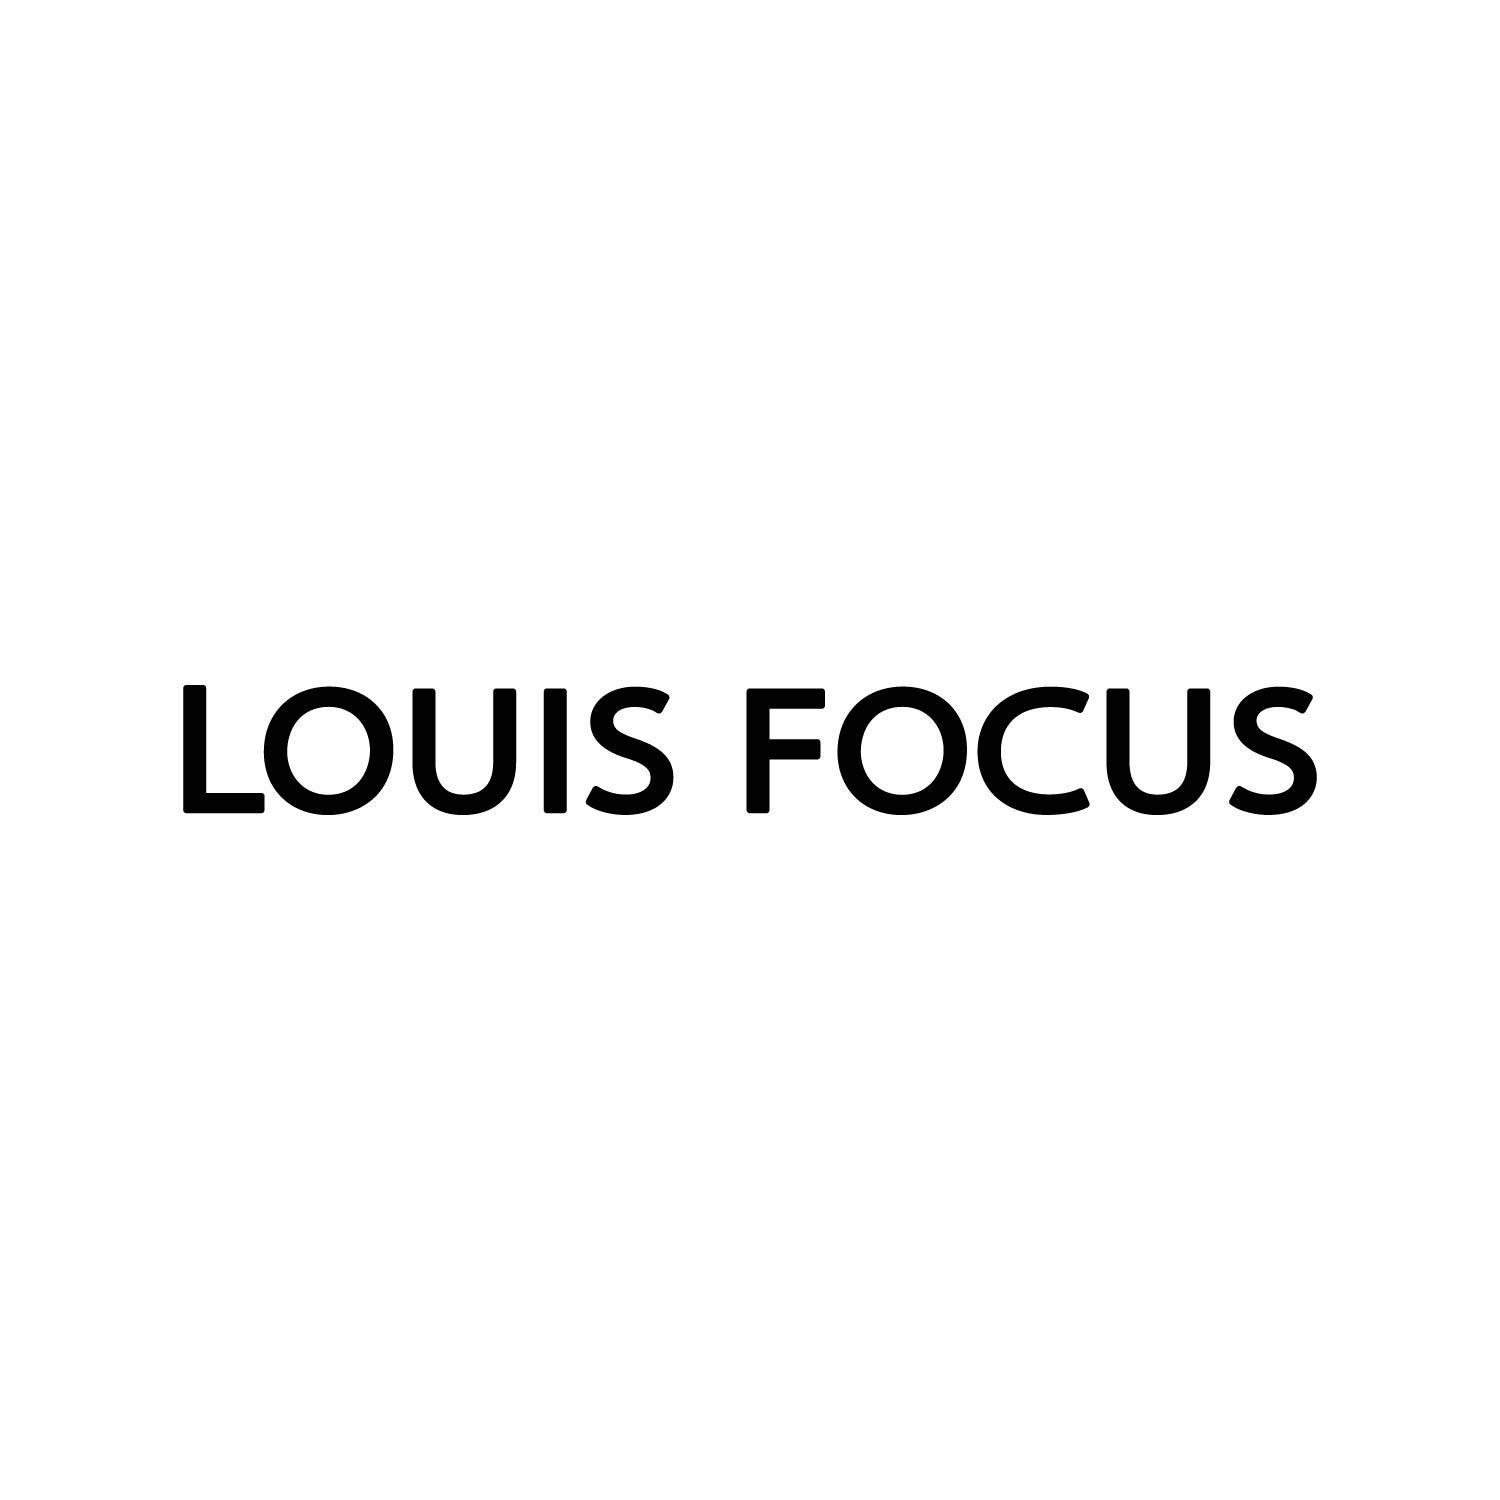 LOUIS FOCUS